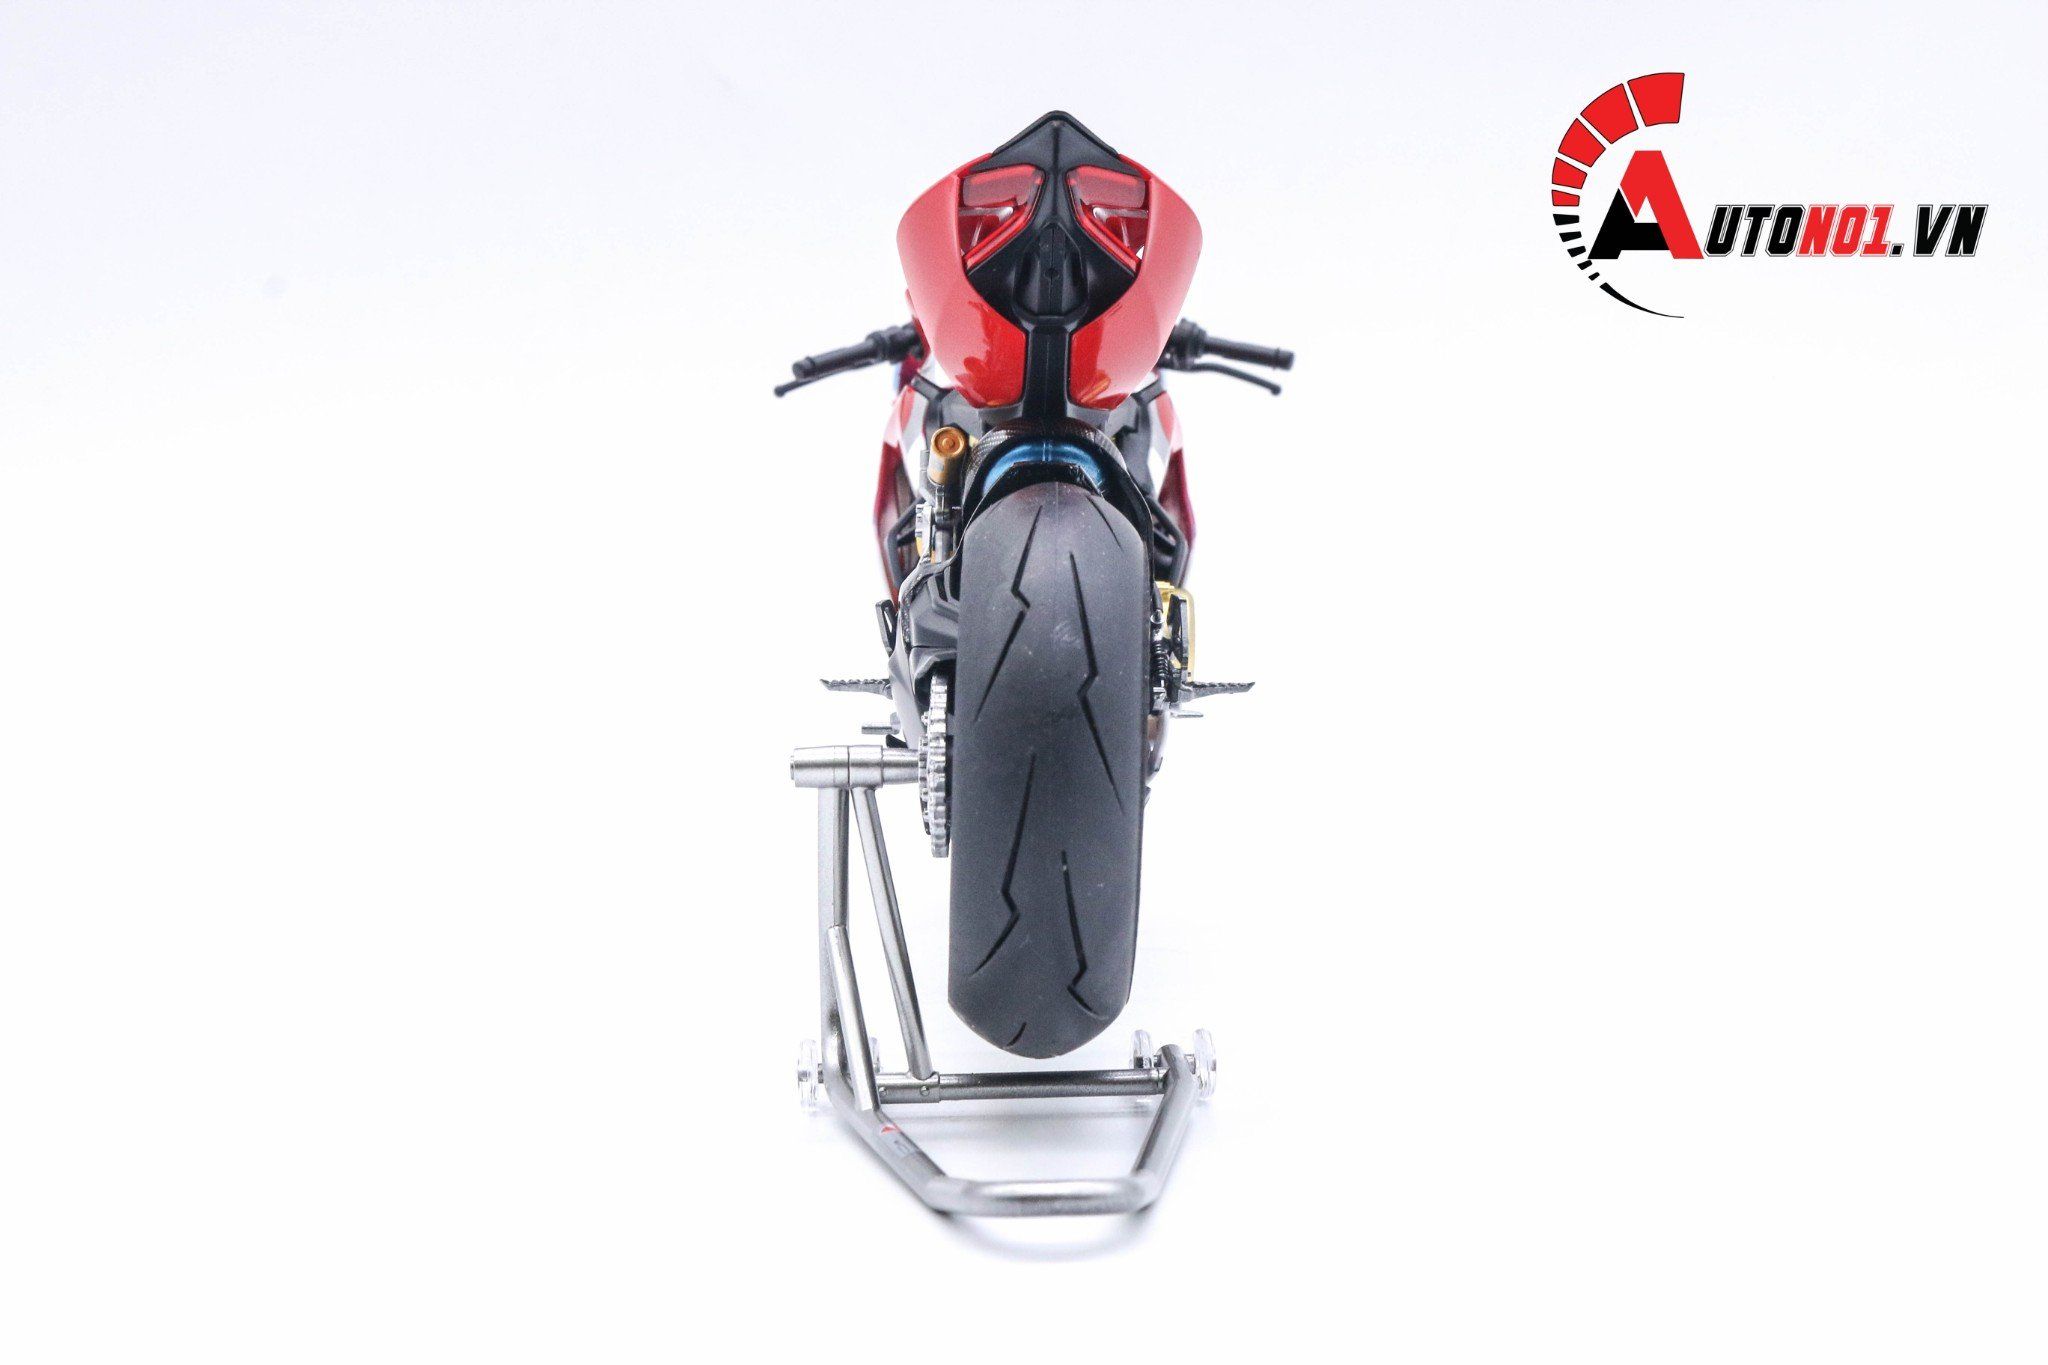  Mô hình xe cao cấp Ducati 1199 Corse Custom 1:12 Tamiya D051 